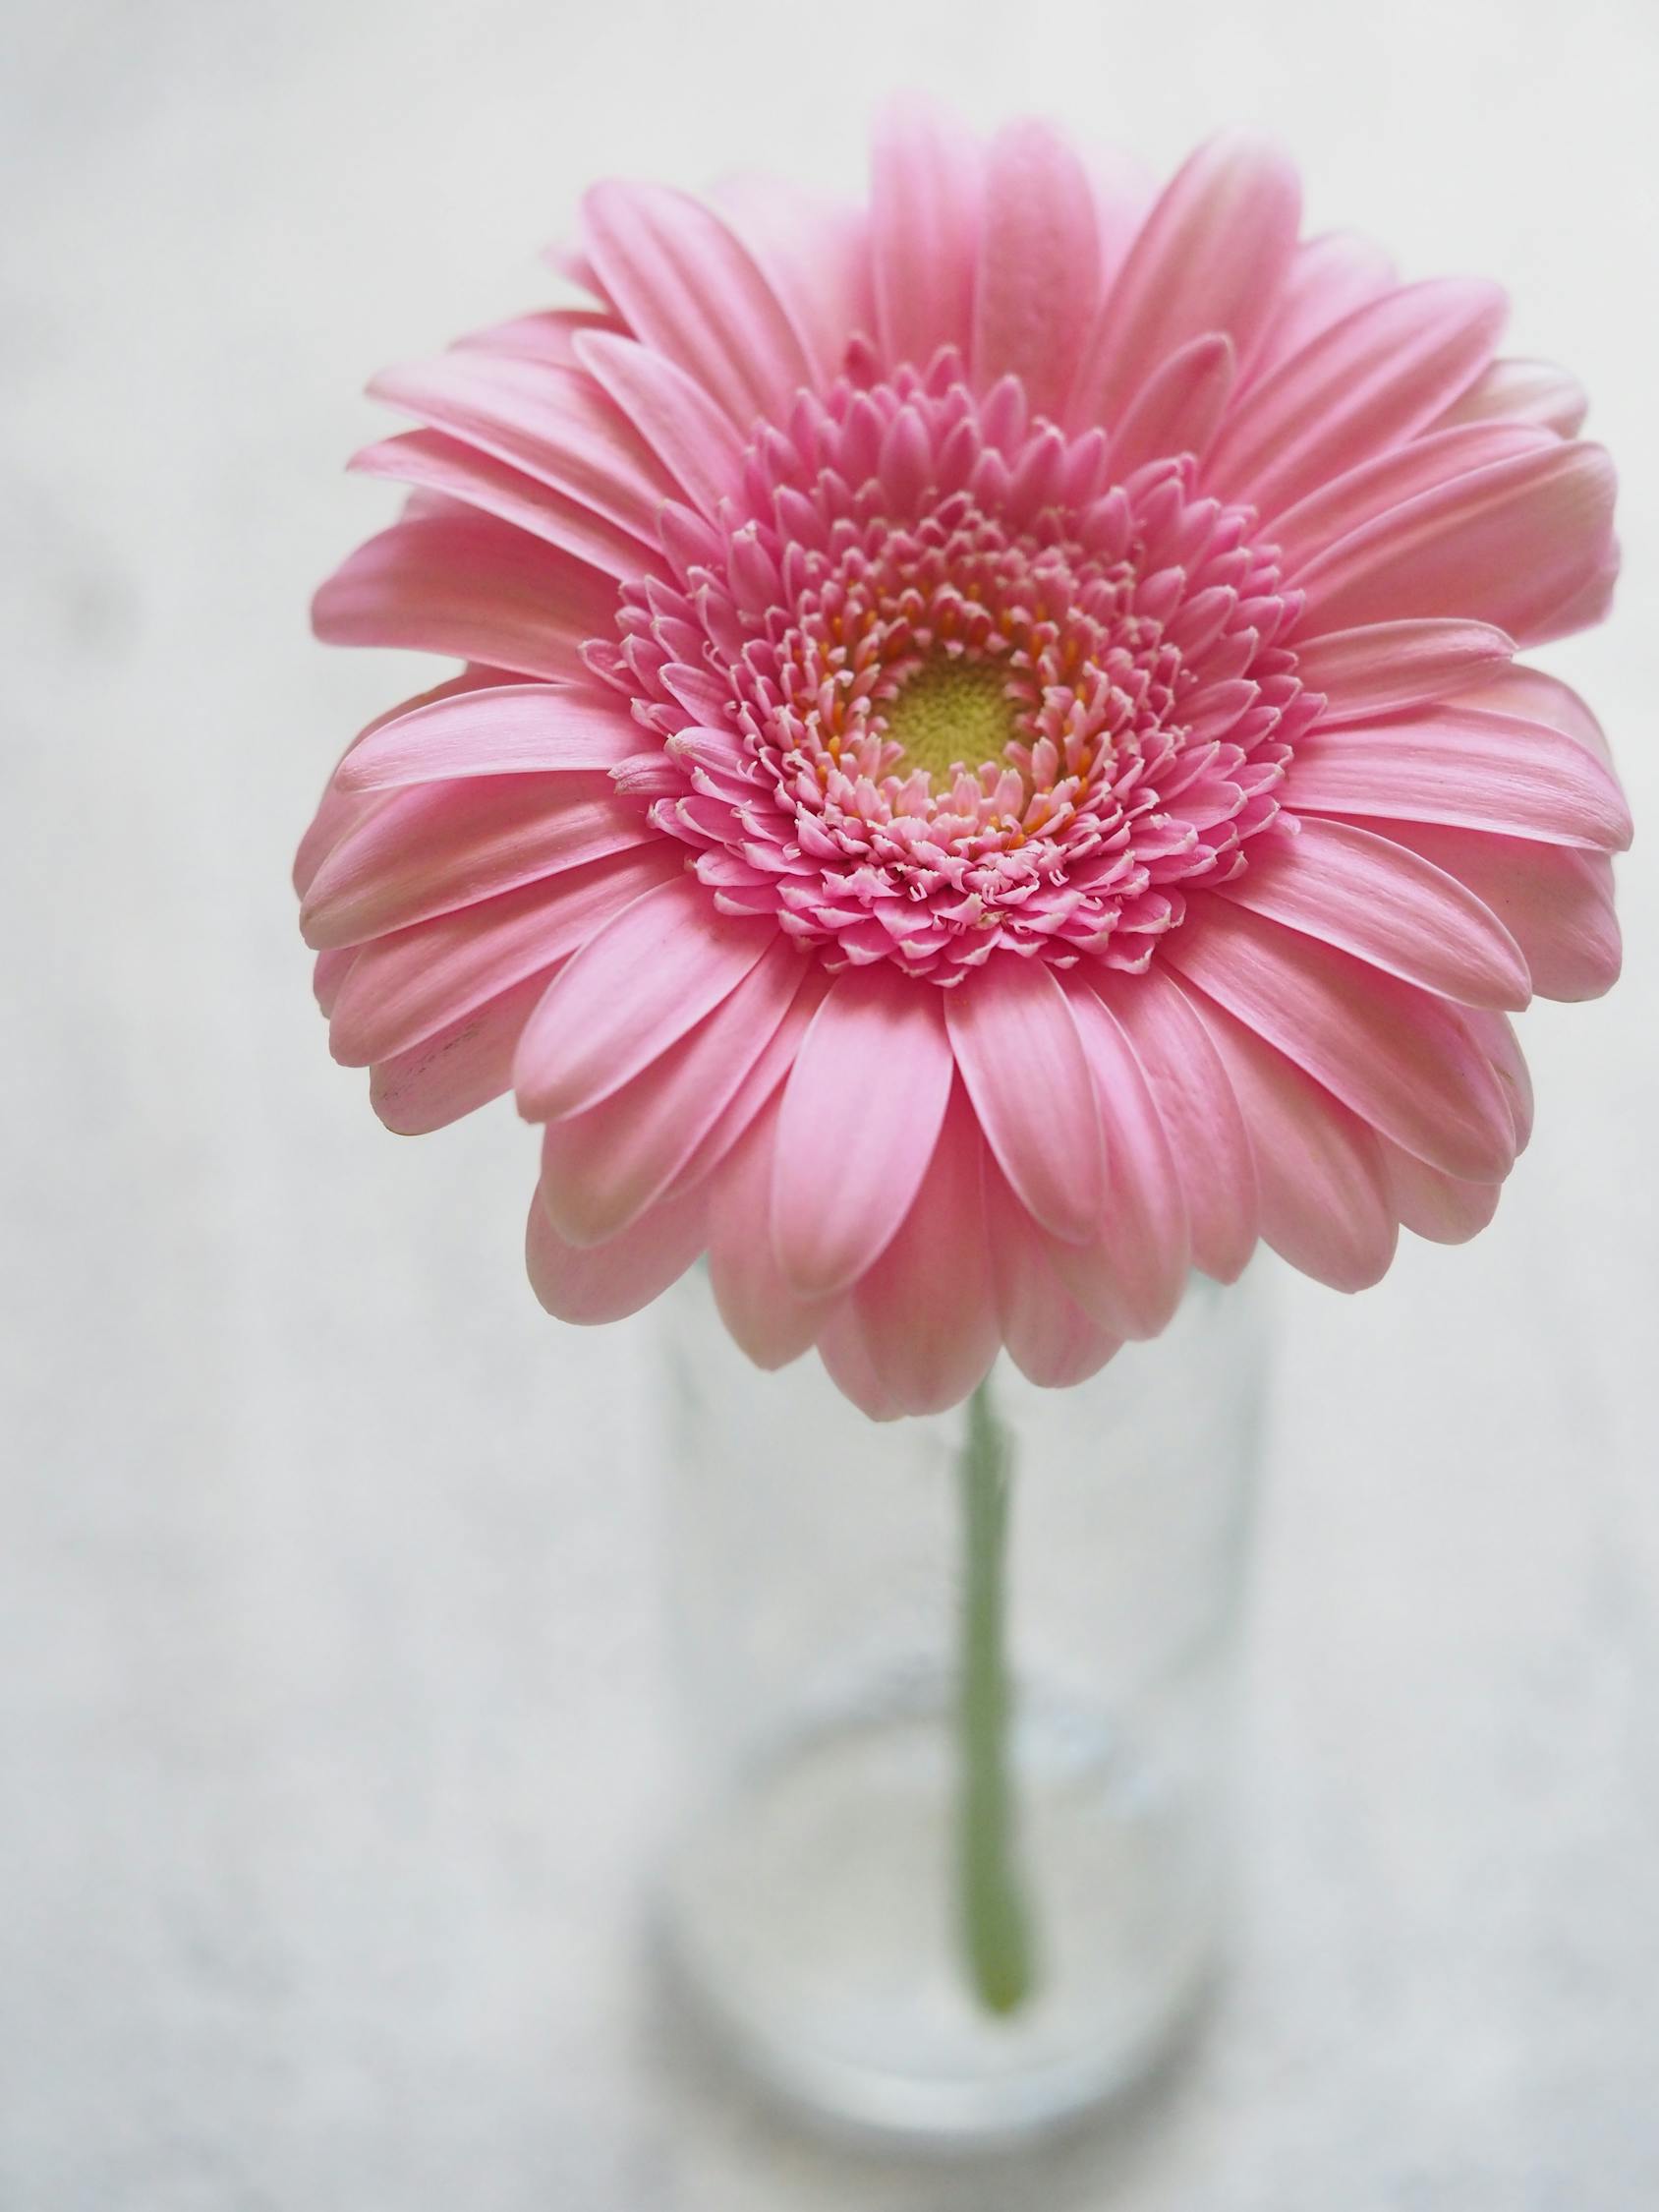 クローズアップ写真のピンクのガーベラの花